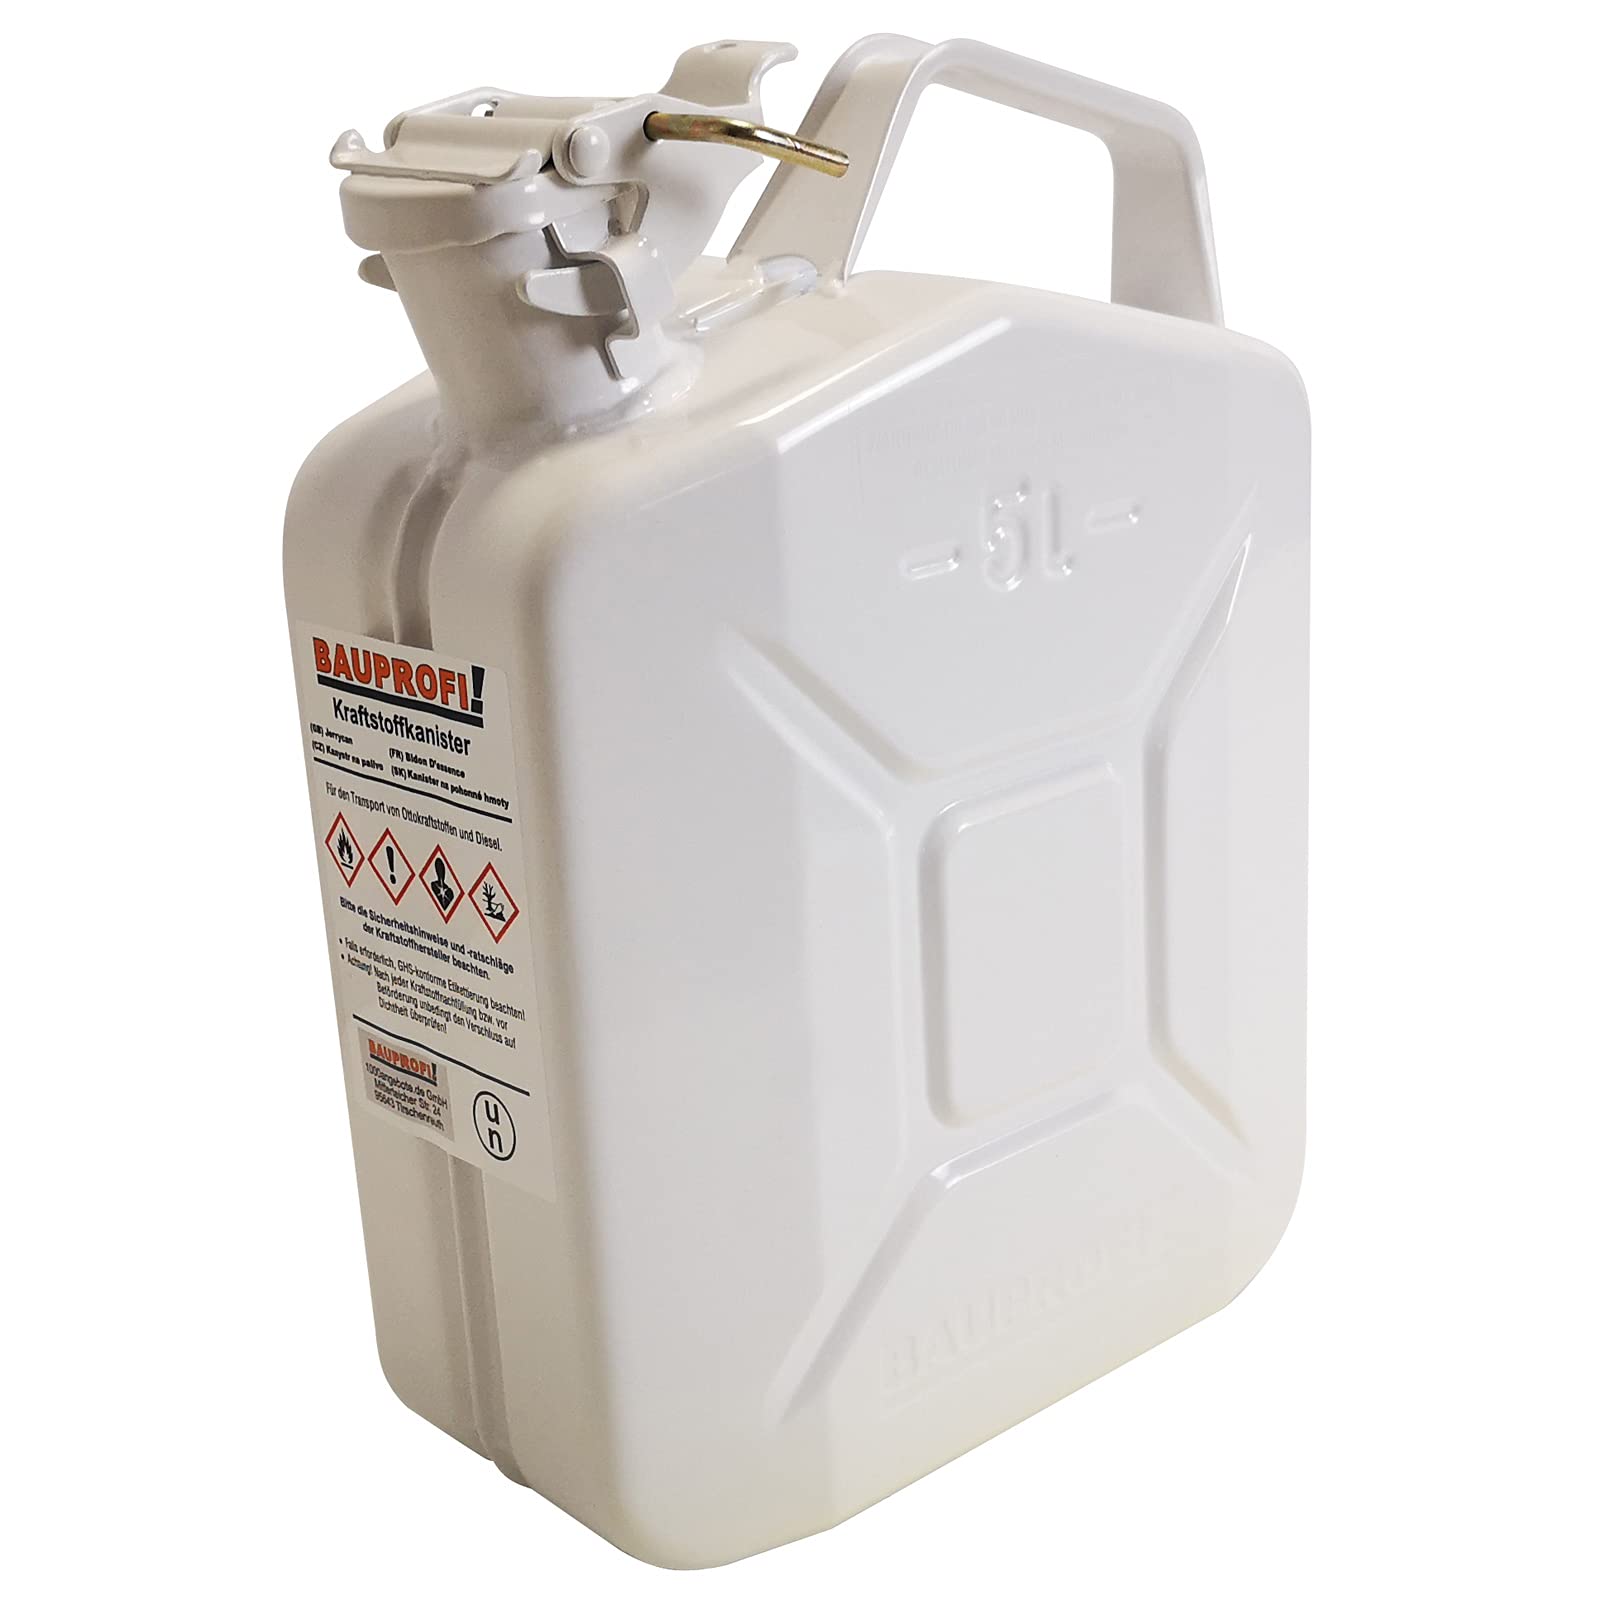 BAUPROFI 5 Liter Stahlblechkanister GGVS mit Sicherungsstift Weiß Benzinkanister